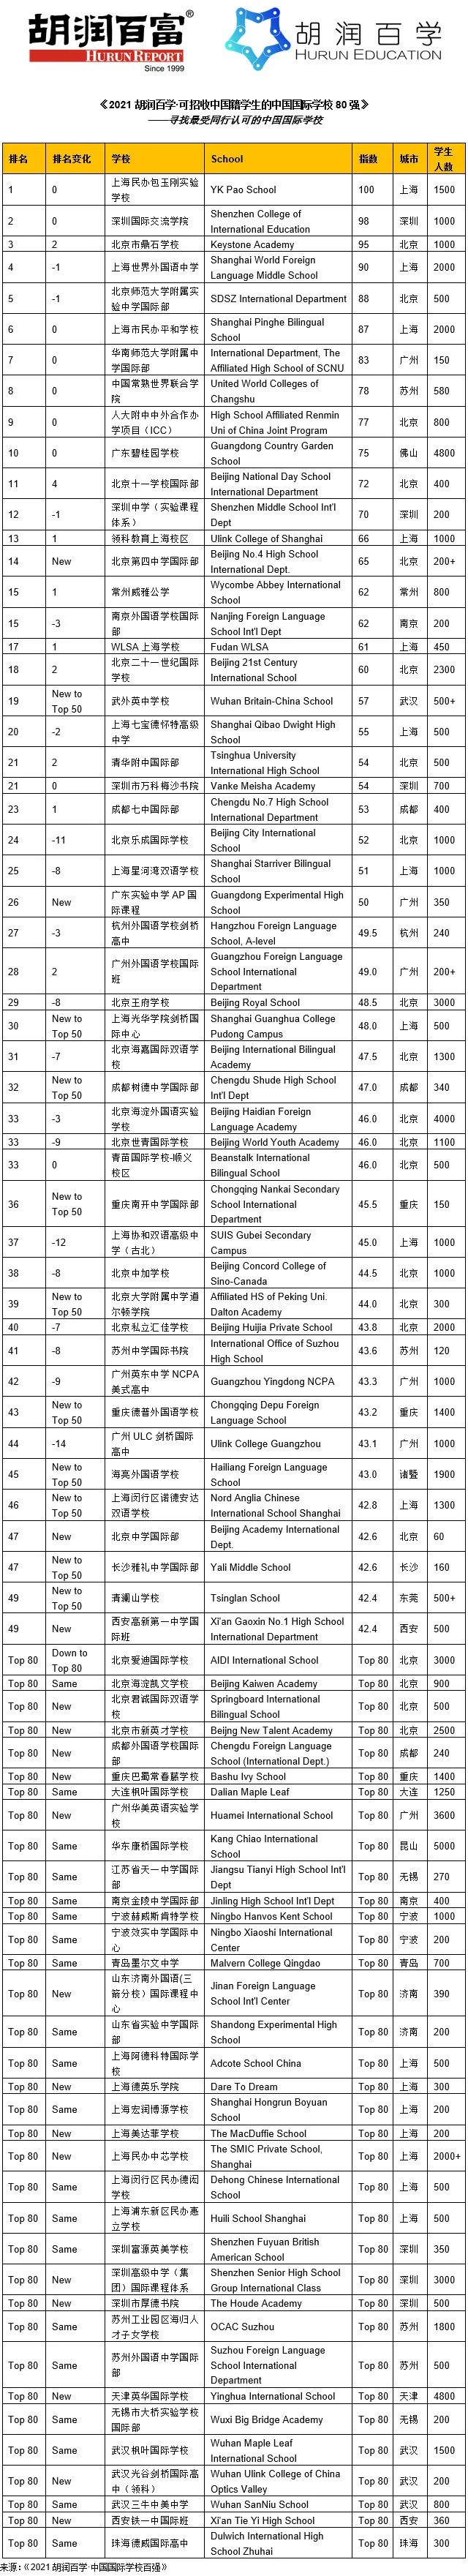 2021胡润百学中国国际学校排行榜｜深国交全国第2大湾区第1  数据 深国交 排名 第2张